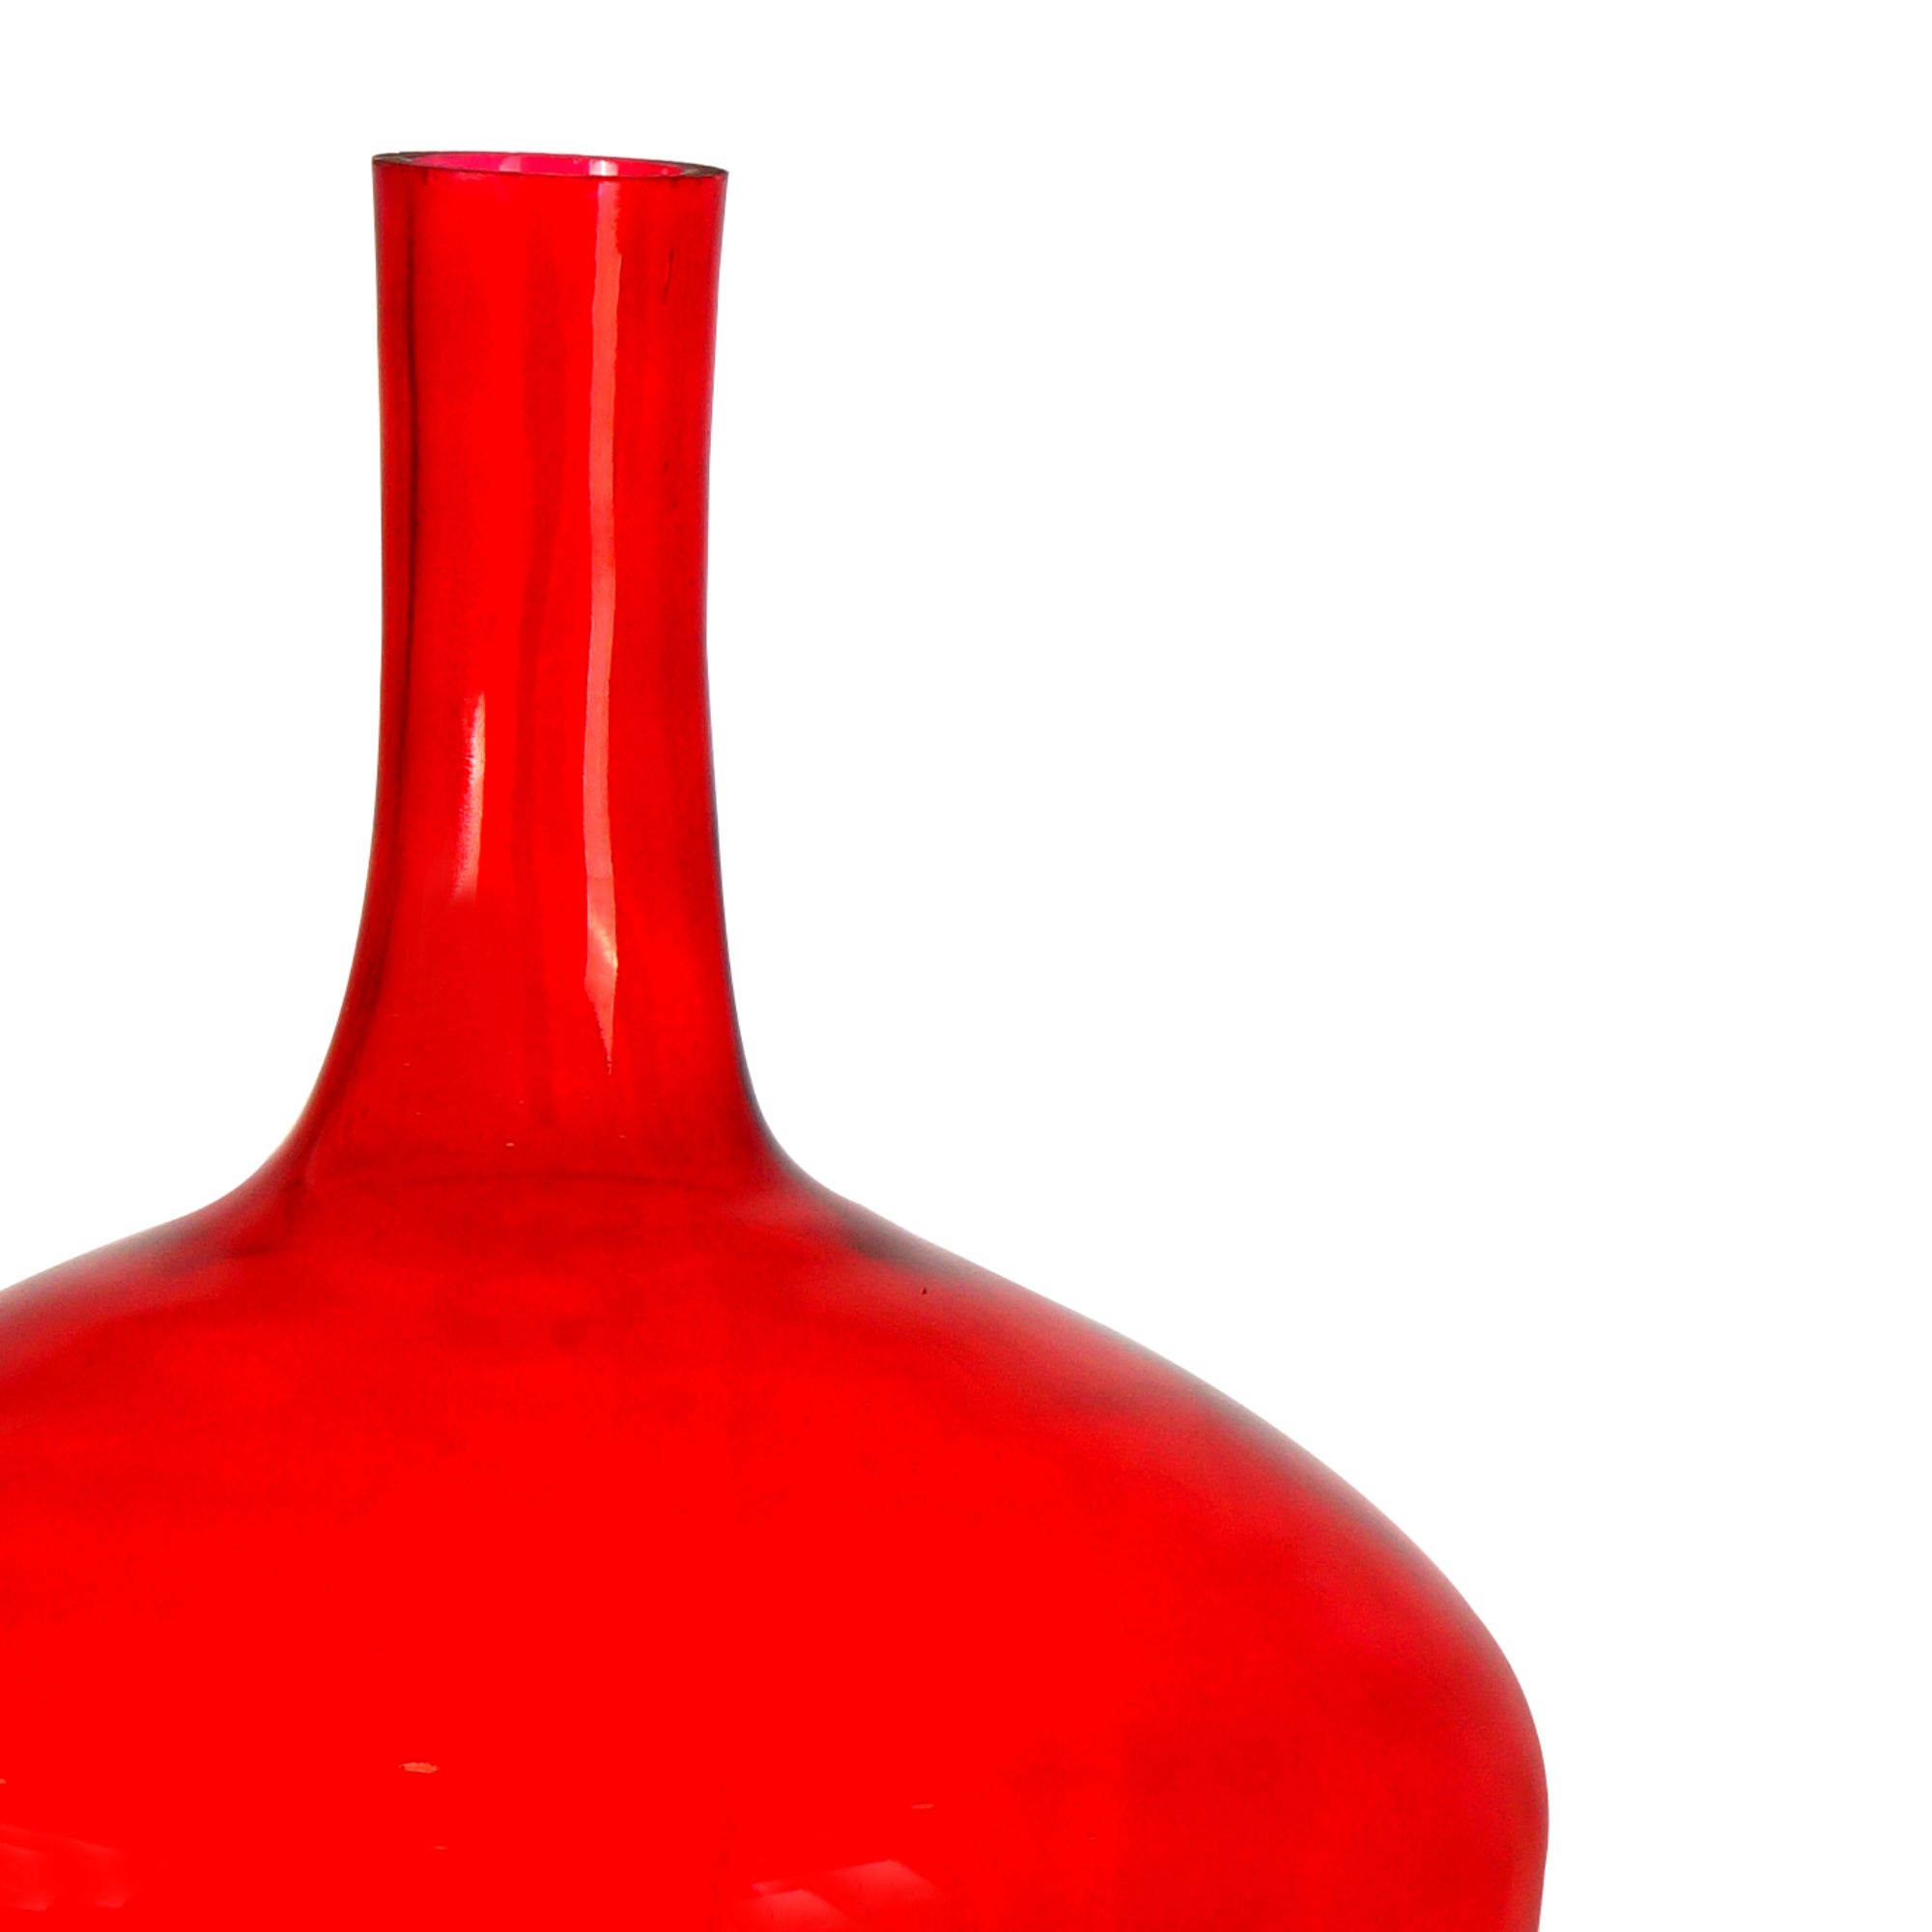 OoNA Surahi Bottle Vase